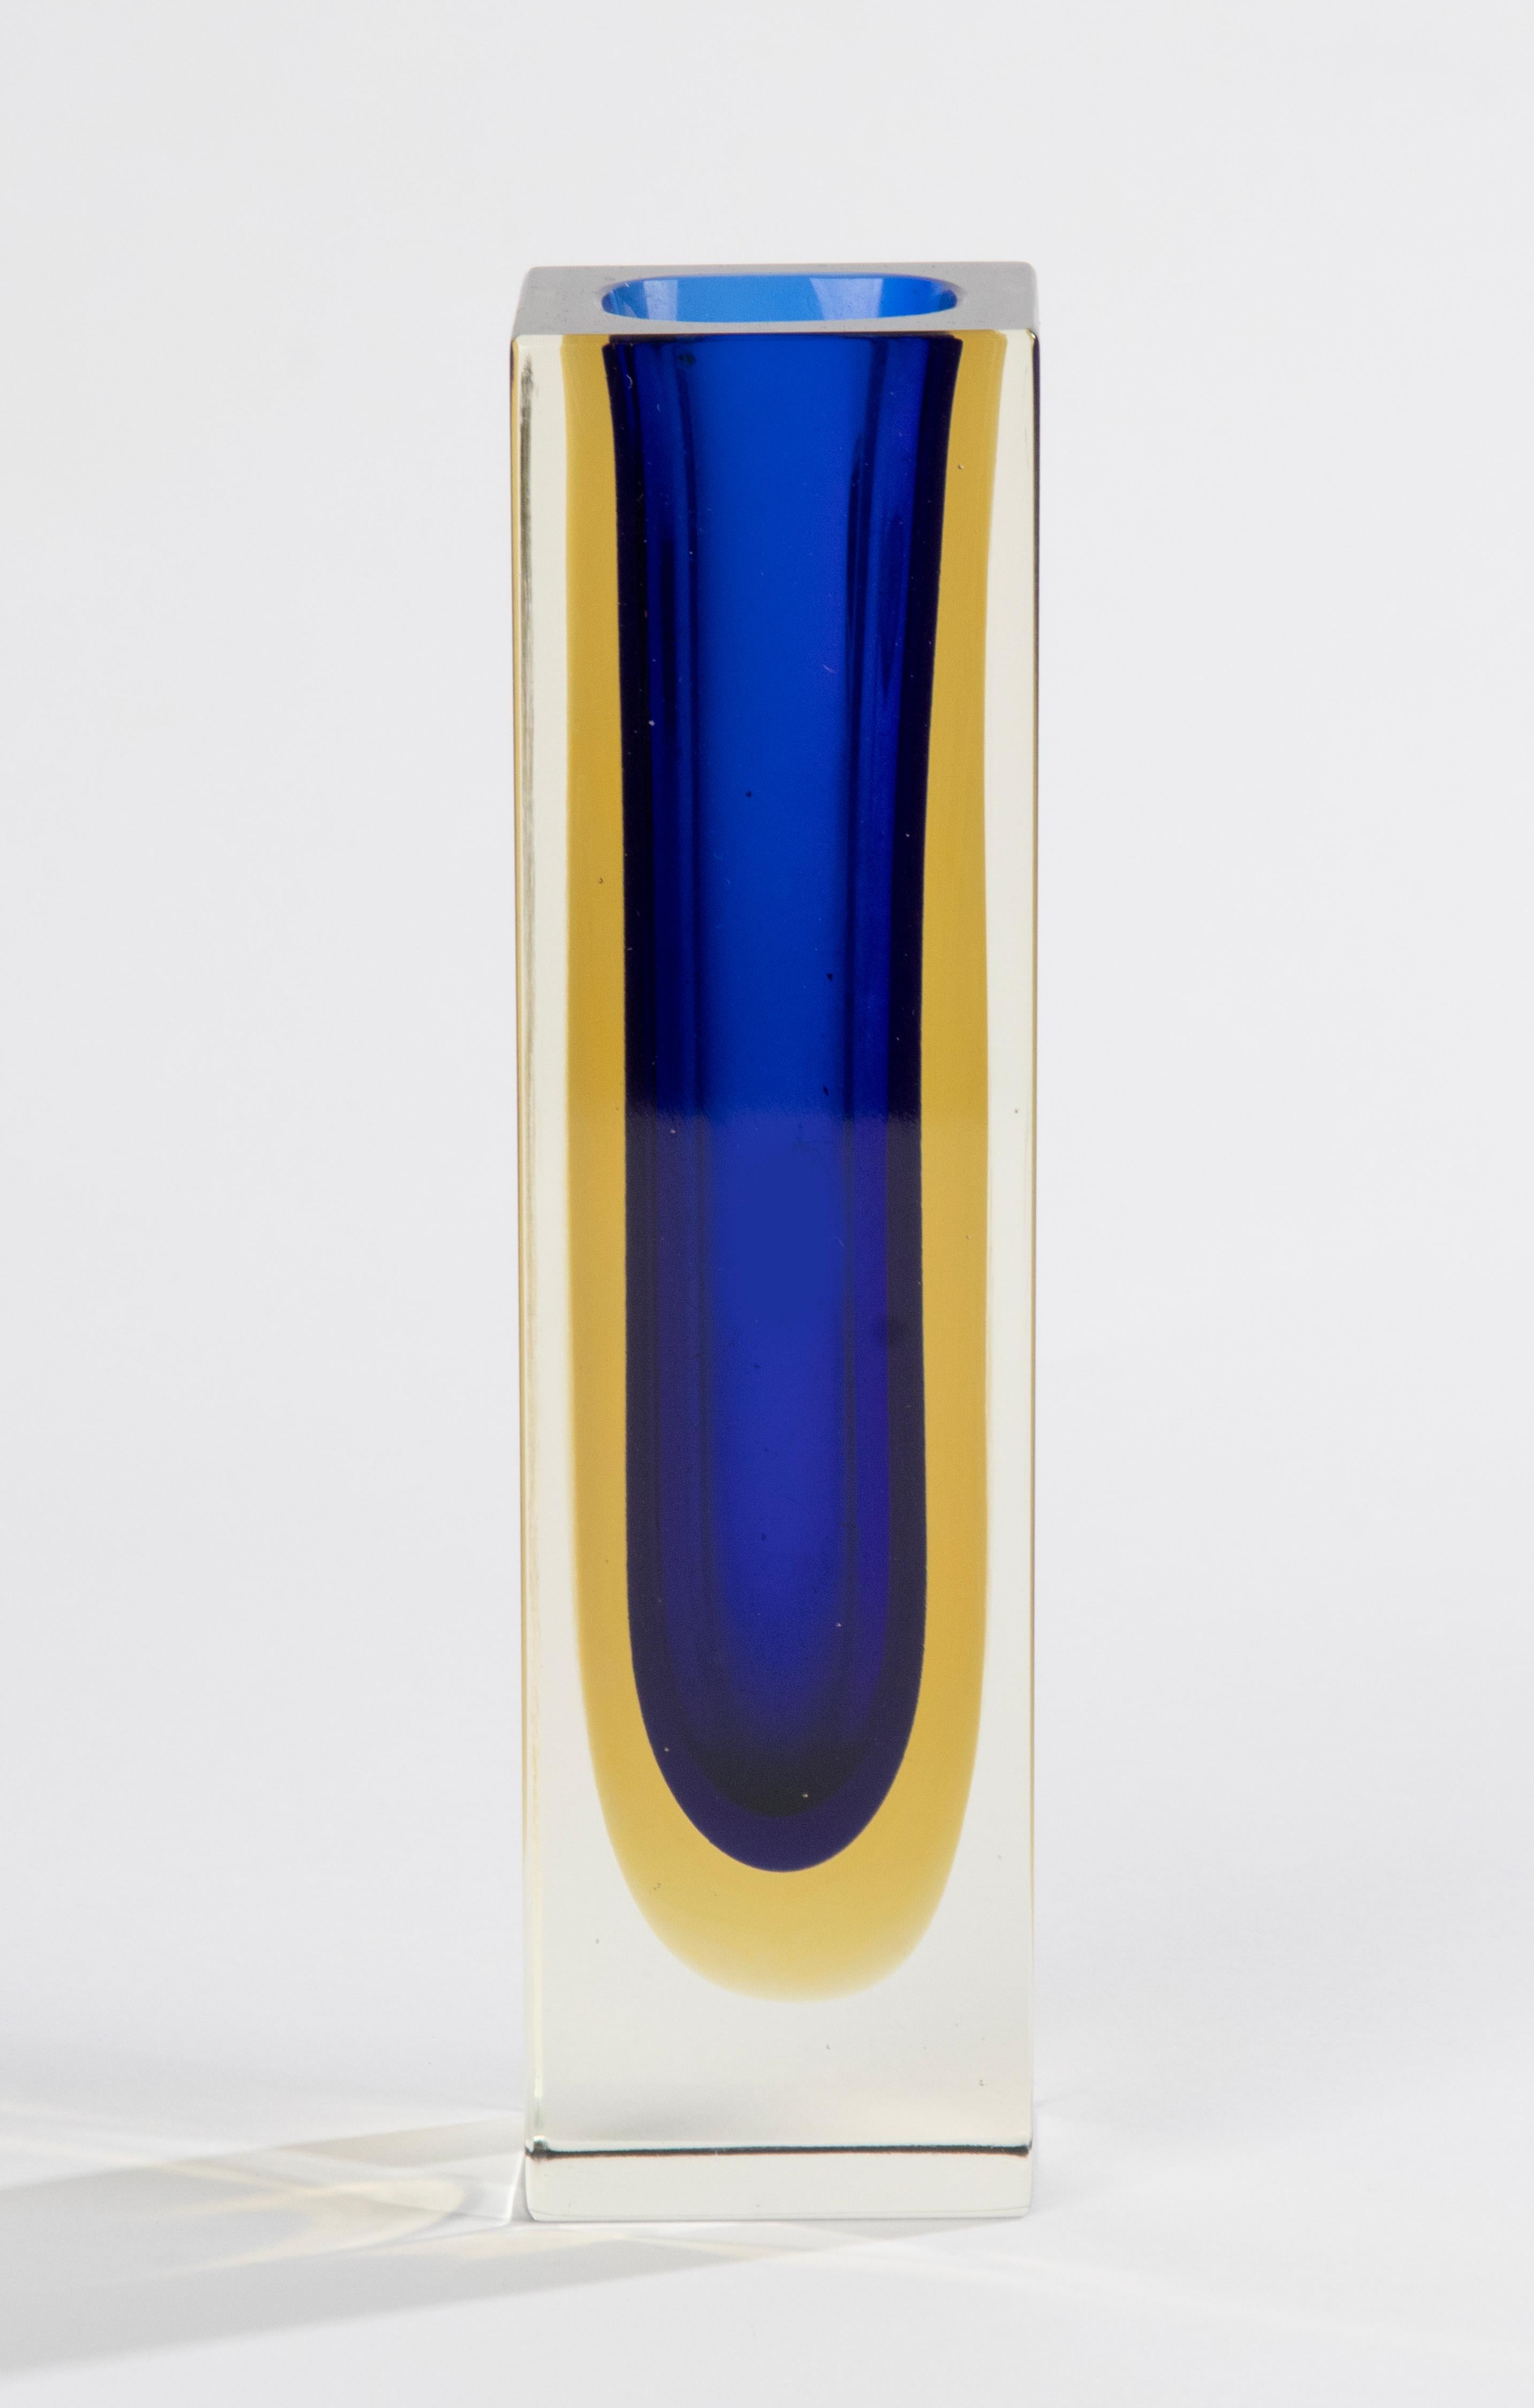 Eine schöne Sommerso-Vase aus Kunstglas, die dem italienischen Designer Flavio Poli zugeschrieben wird. 
Die Vase ist in gutem Zustand. Schöne Farben und Qualität. 

Abmessungen: 5 x 5 cm und 18 cm hoch. 
Kostenloser Versand weltweit